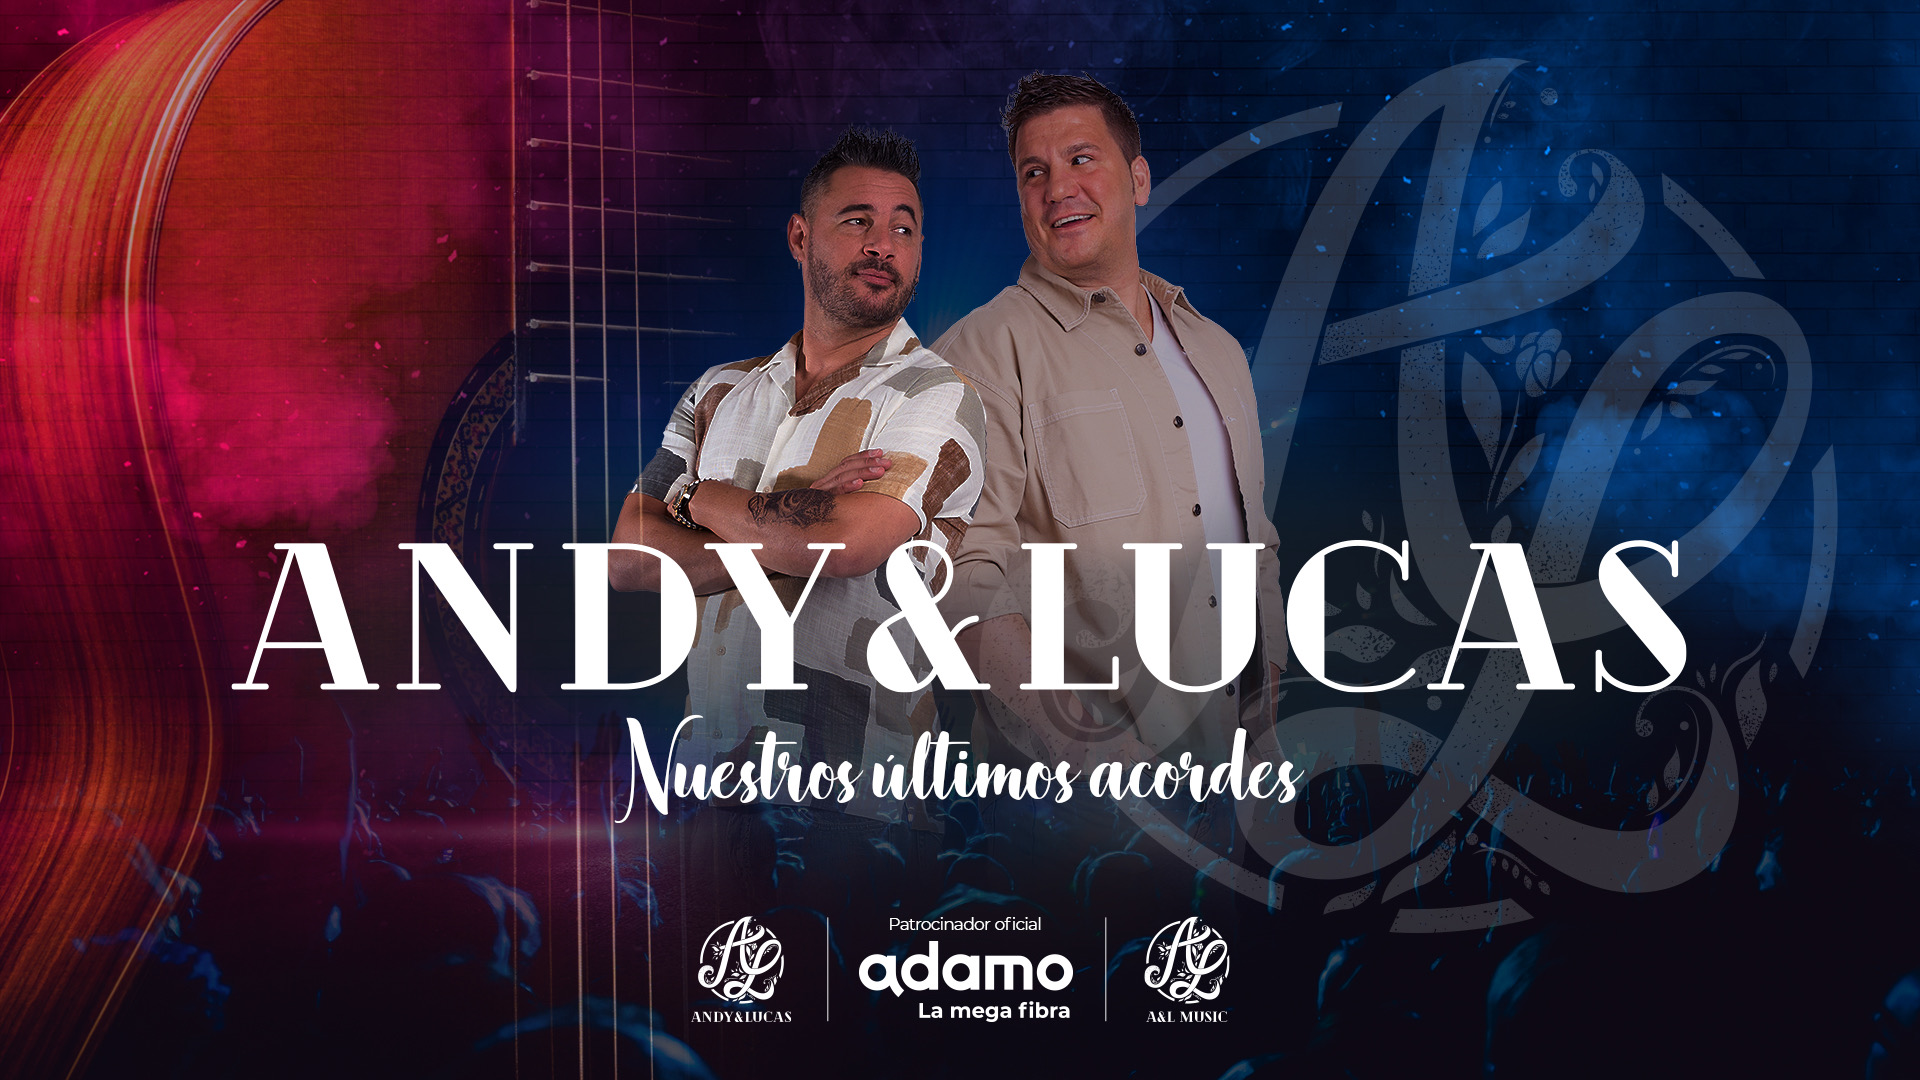 andy-y-lucas-nuestros-ultimos-acordes-en-granada-6581c54f018ca2.14176629.jpeg